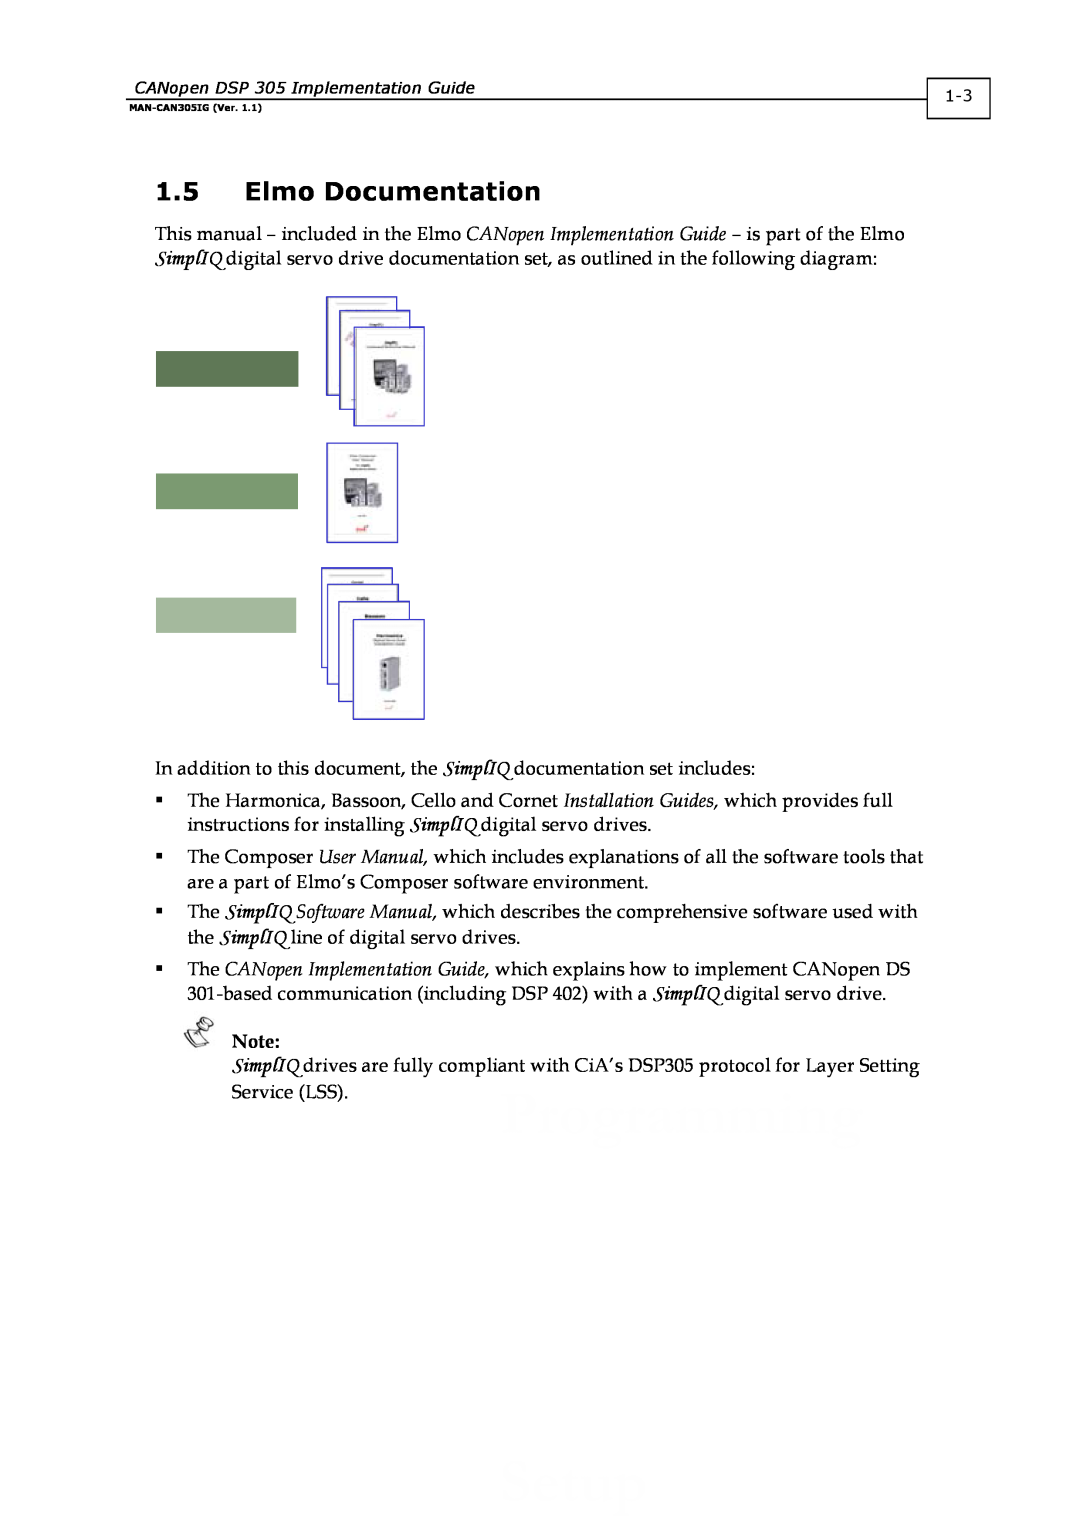 Elmo DSP 305 manual 1.5Elmo Documentation 